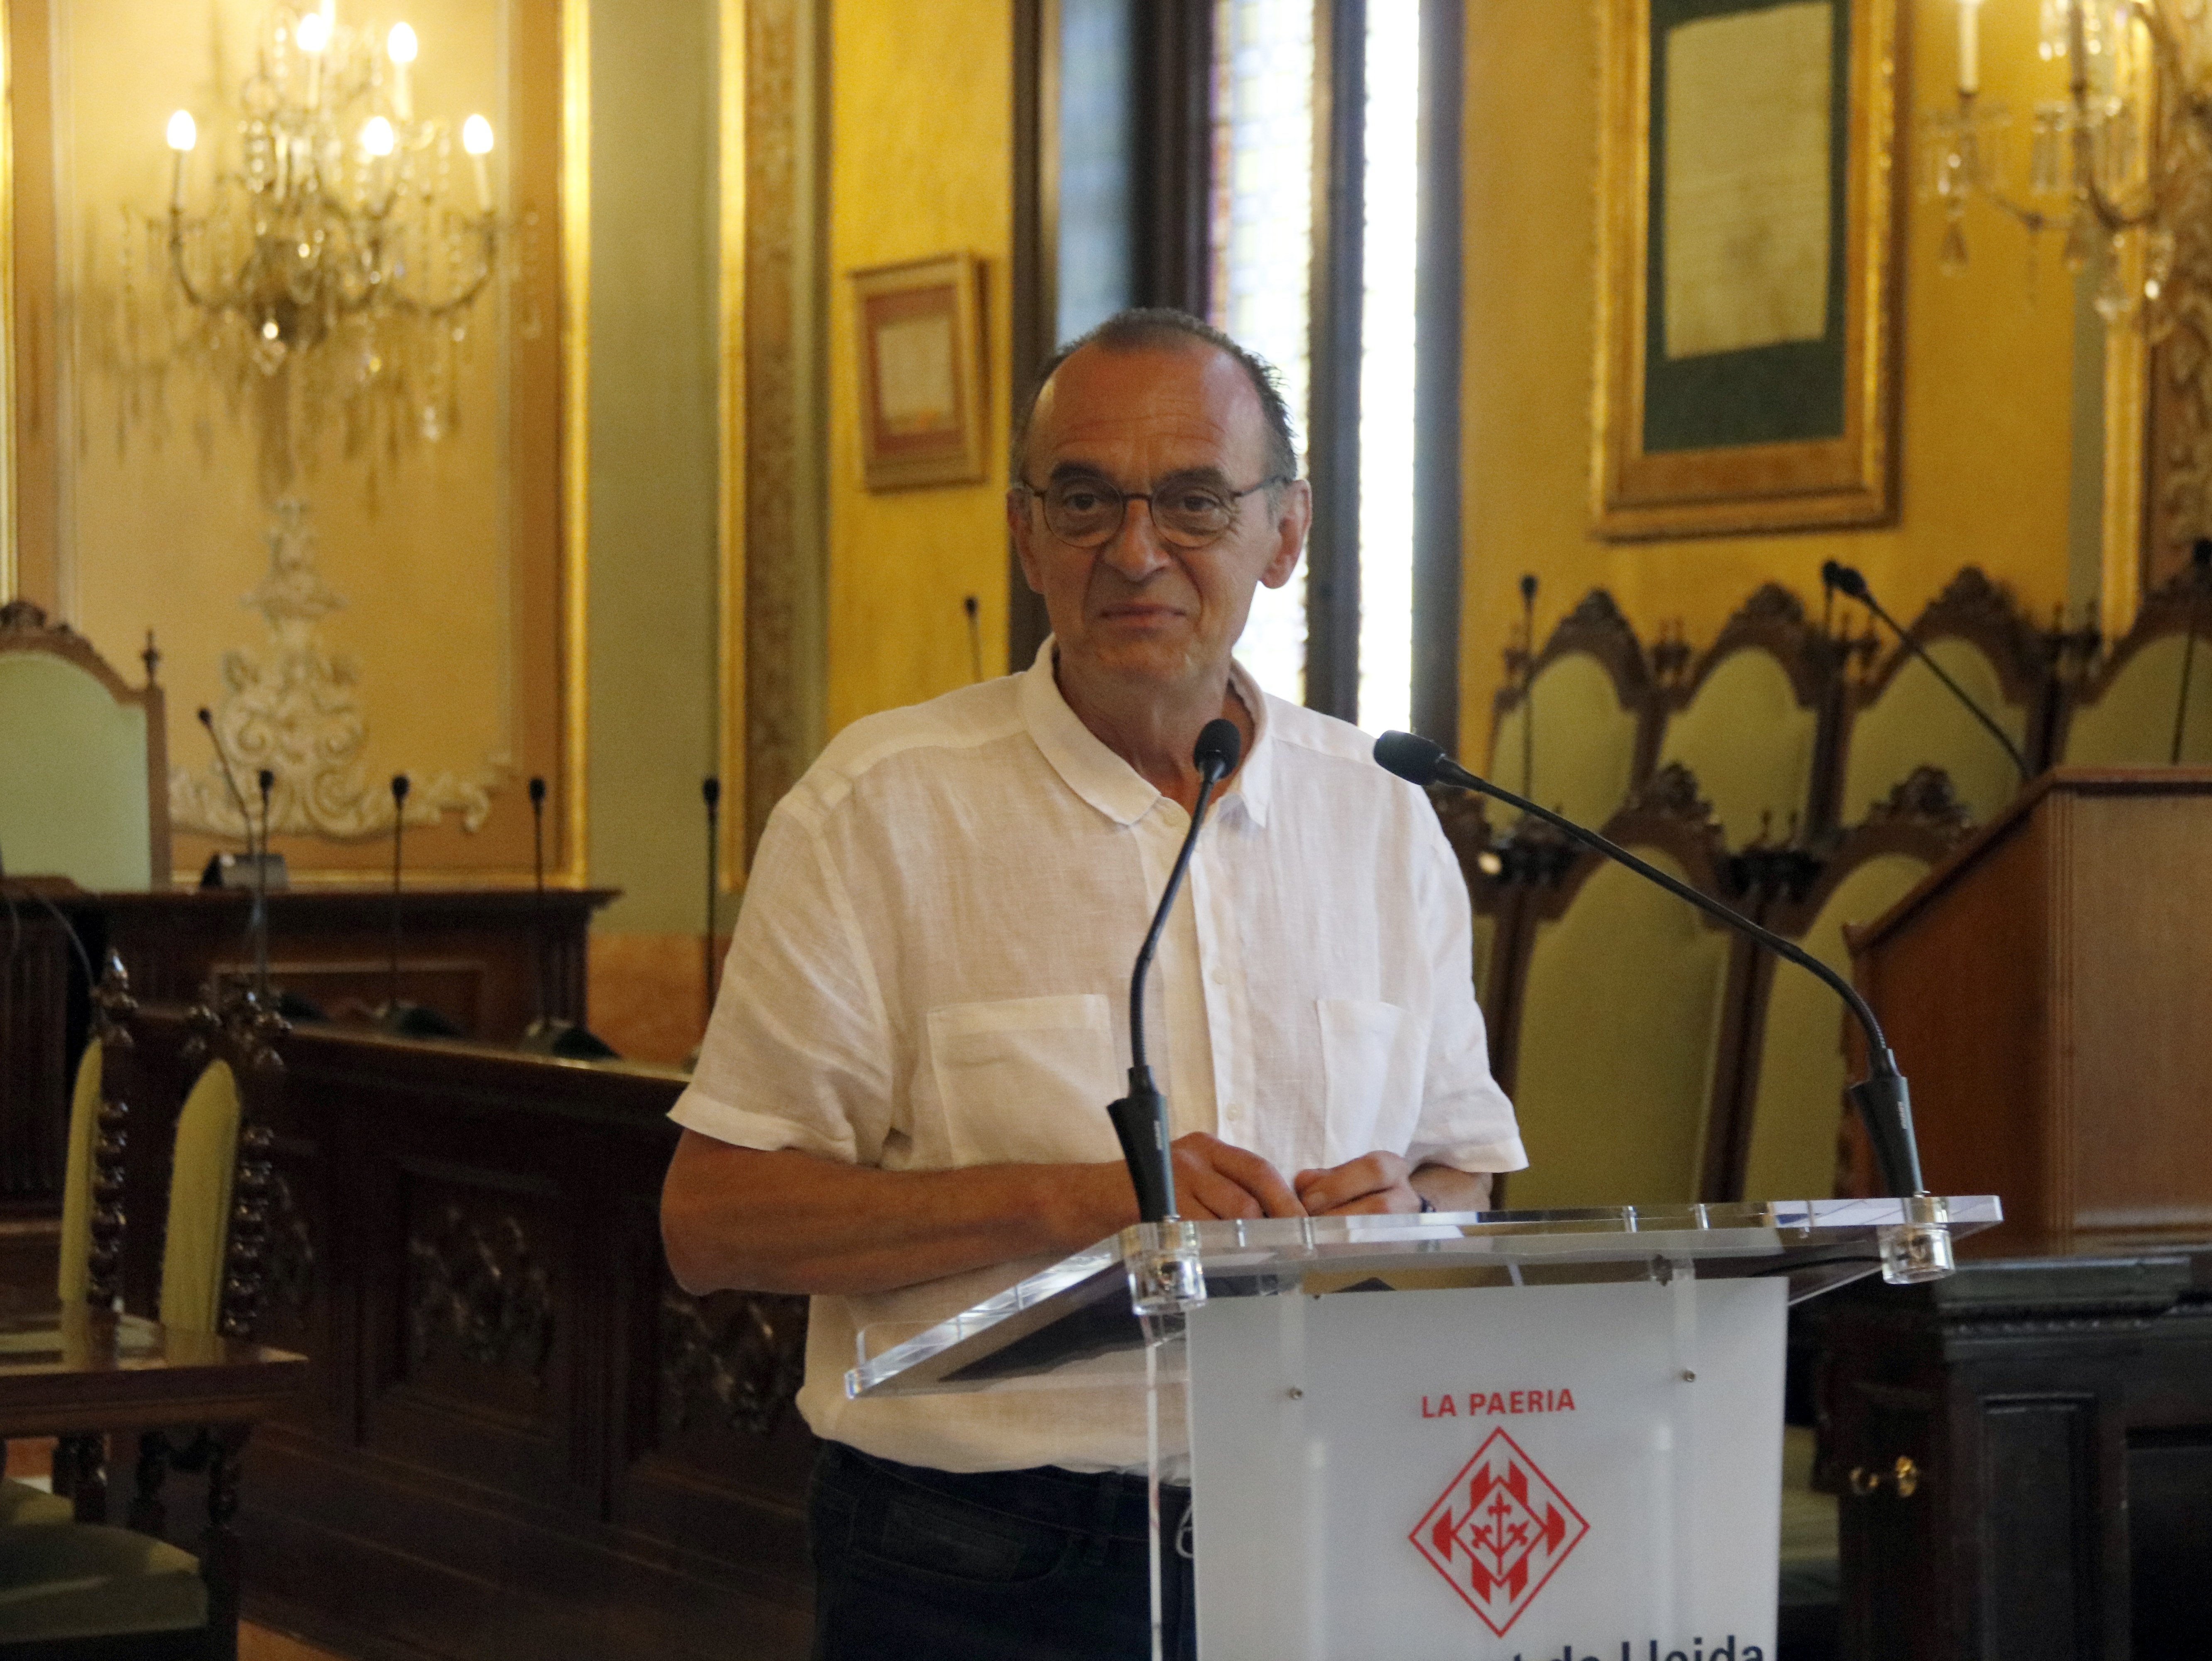 Pueyo i el confinament: "Necessitem l'afecte i suport de la resta de catalans"